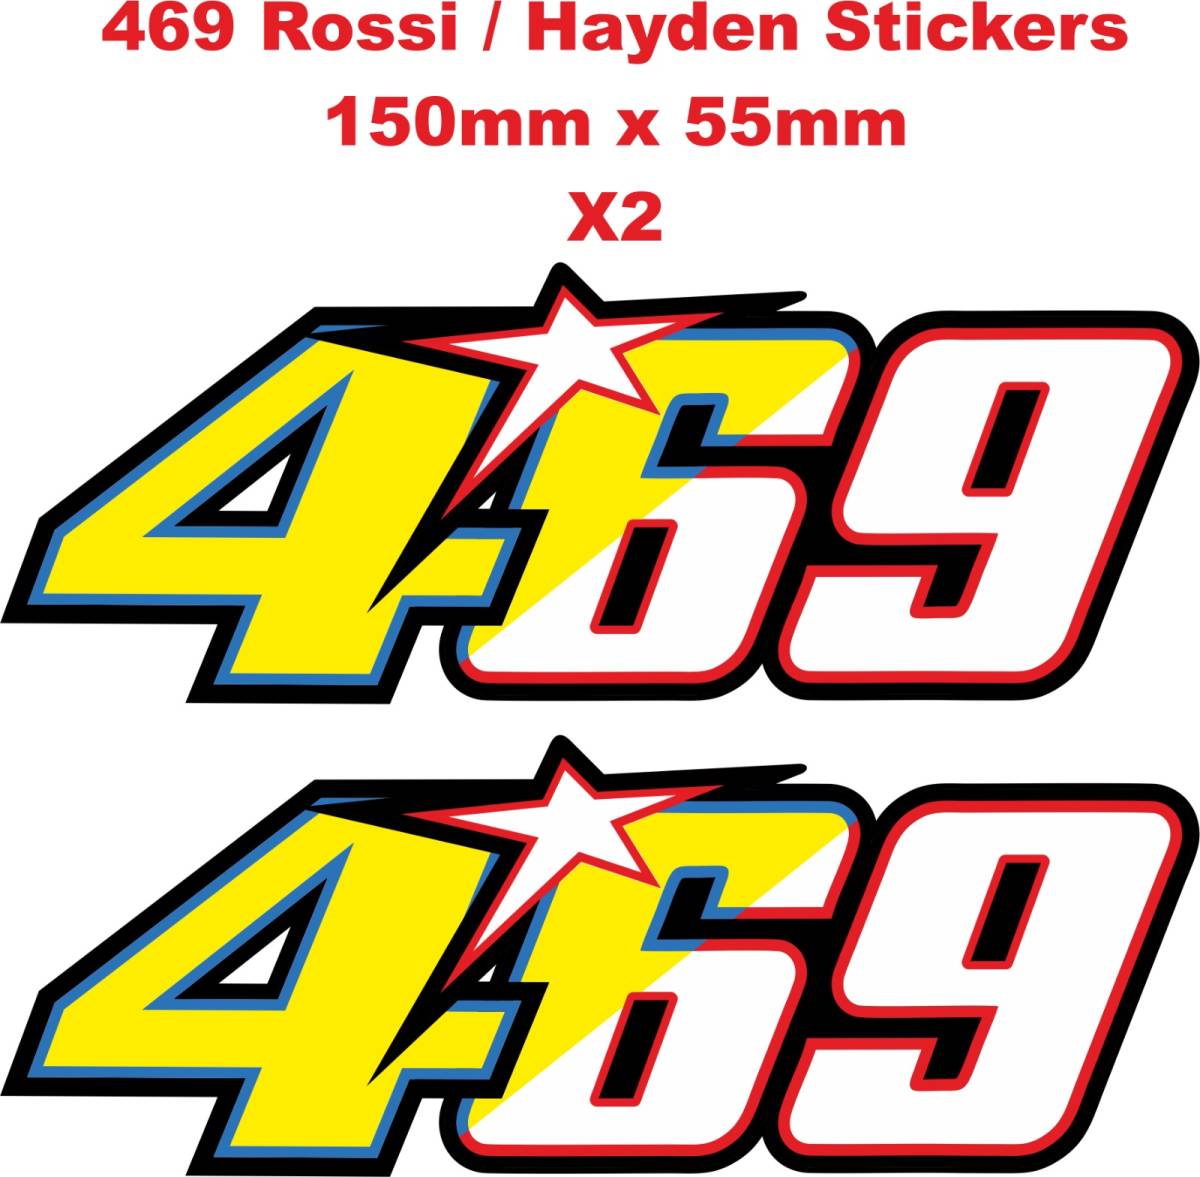 送料無料 Nicky HAYDEN Rossi 469 46 69 Sticker Decal ヘルメット ステッカー シール デカール 150mm x 55mm 2枚セット_画像3